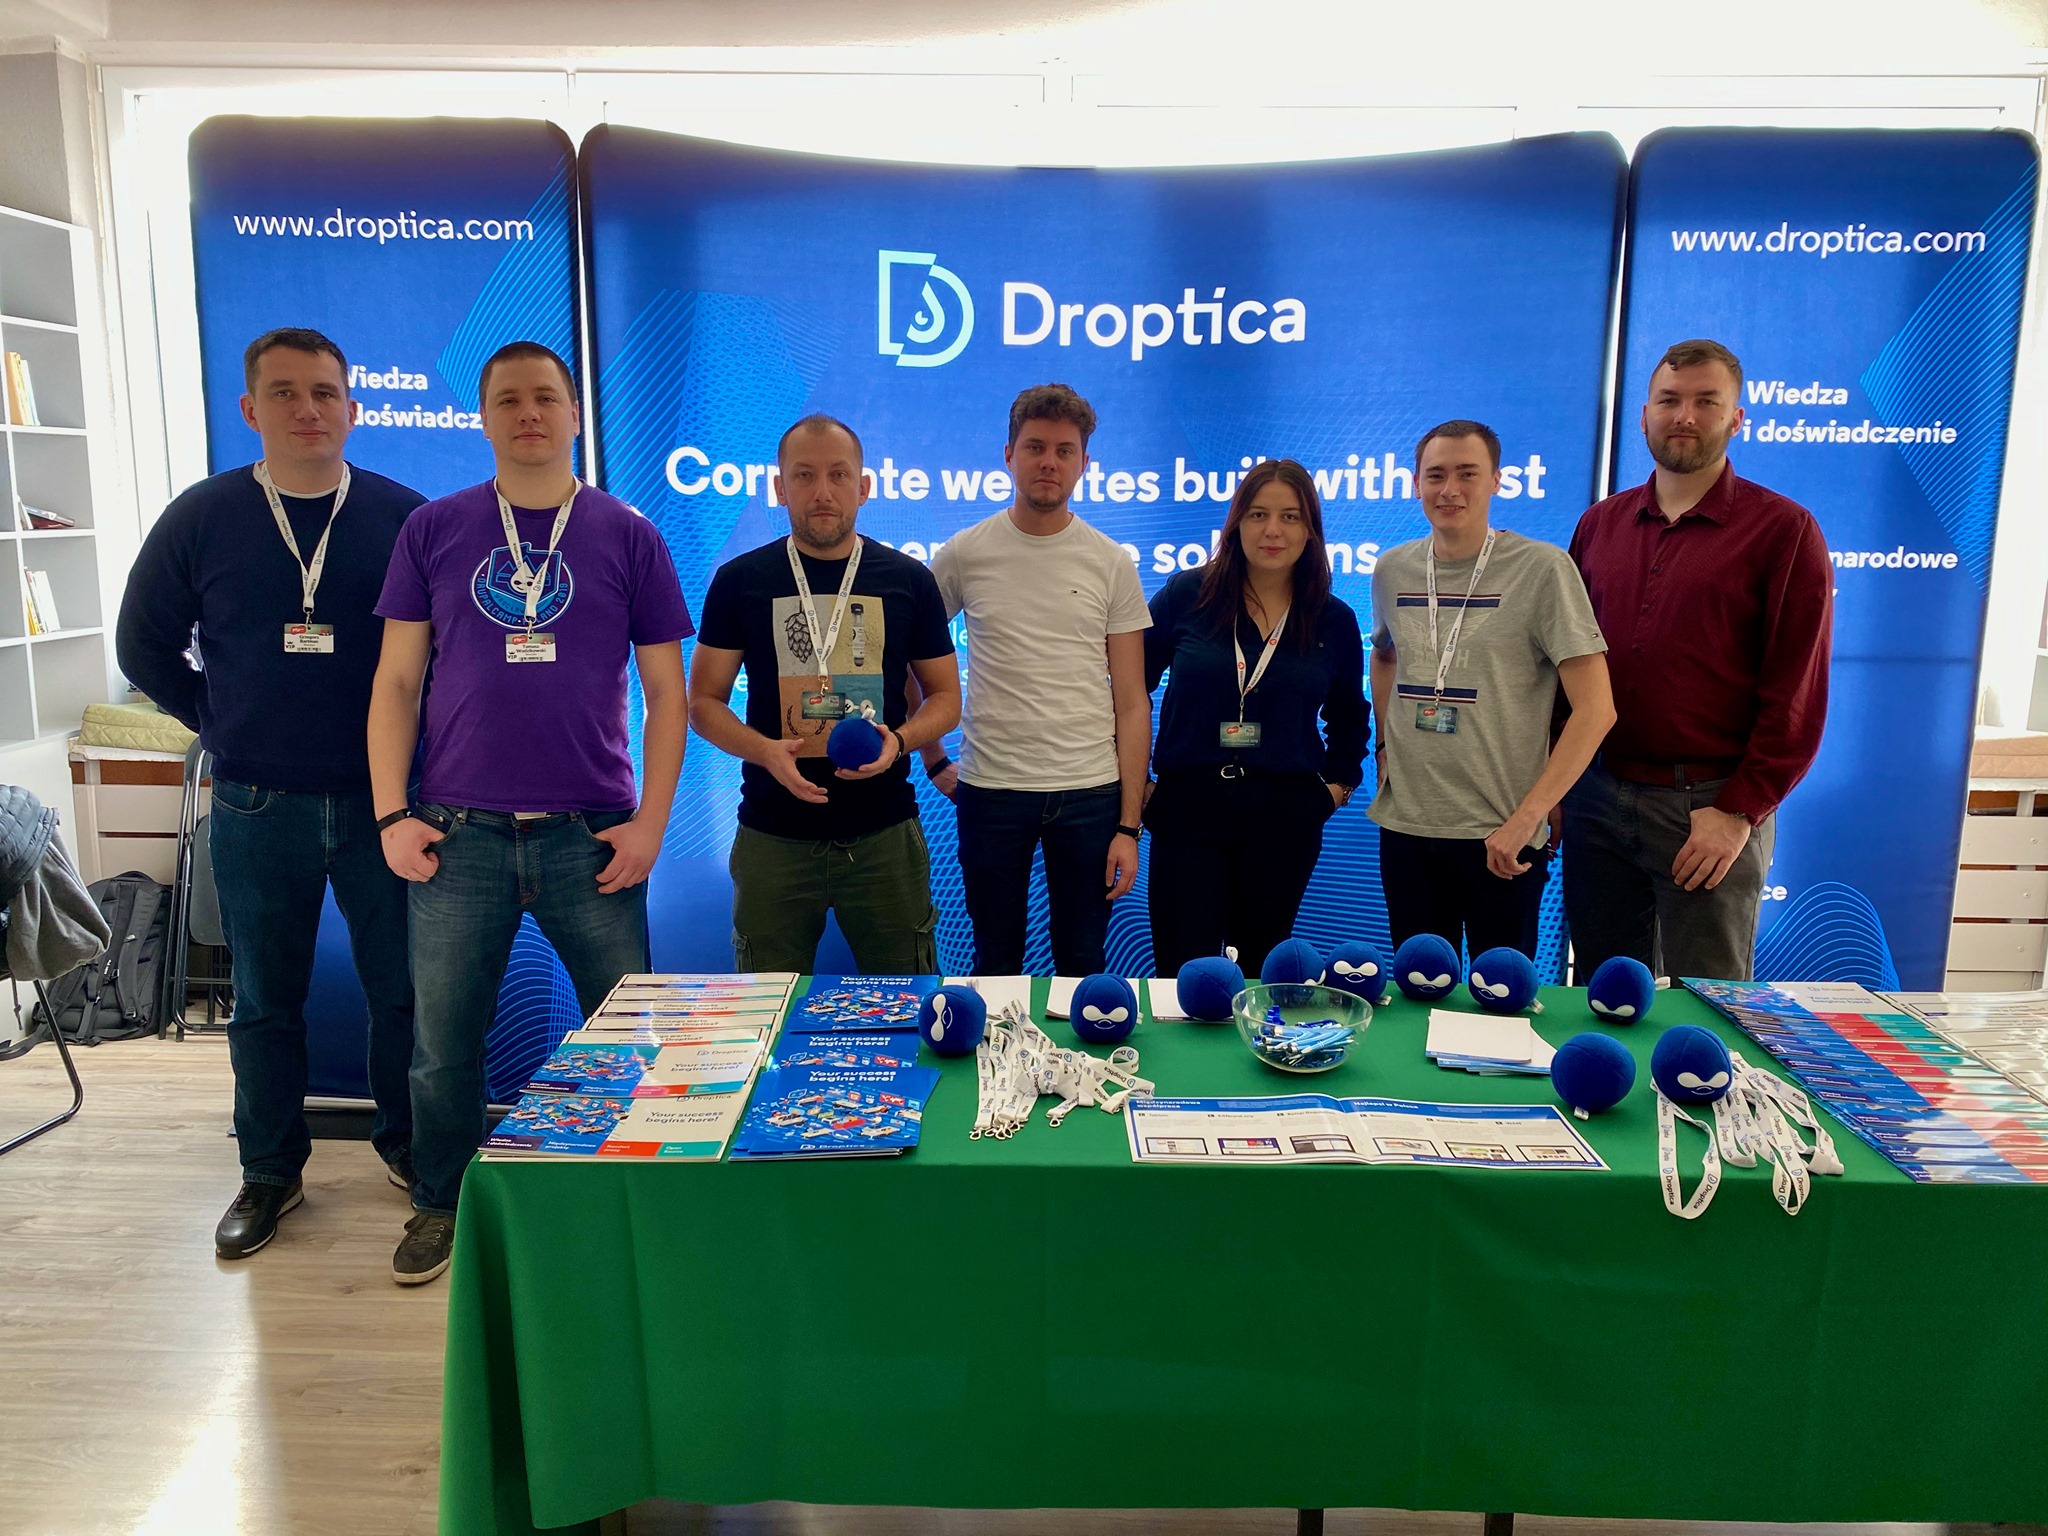 Droptica Team during the event